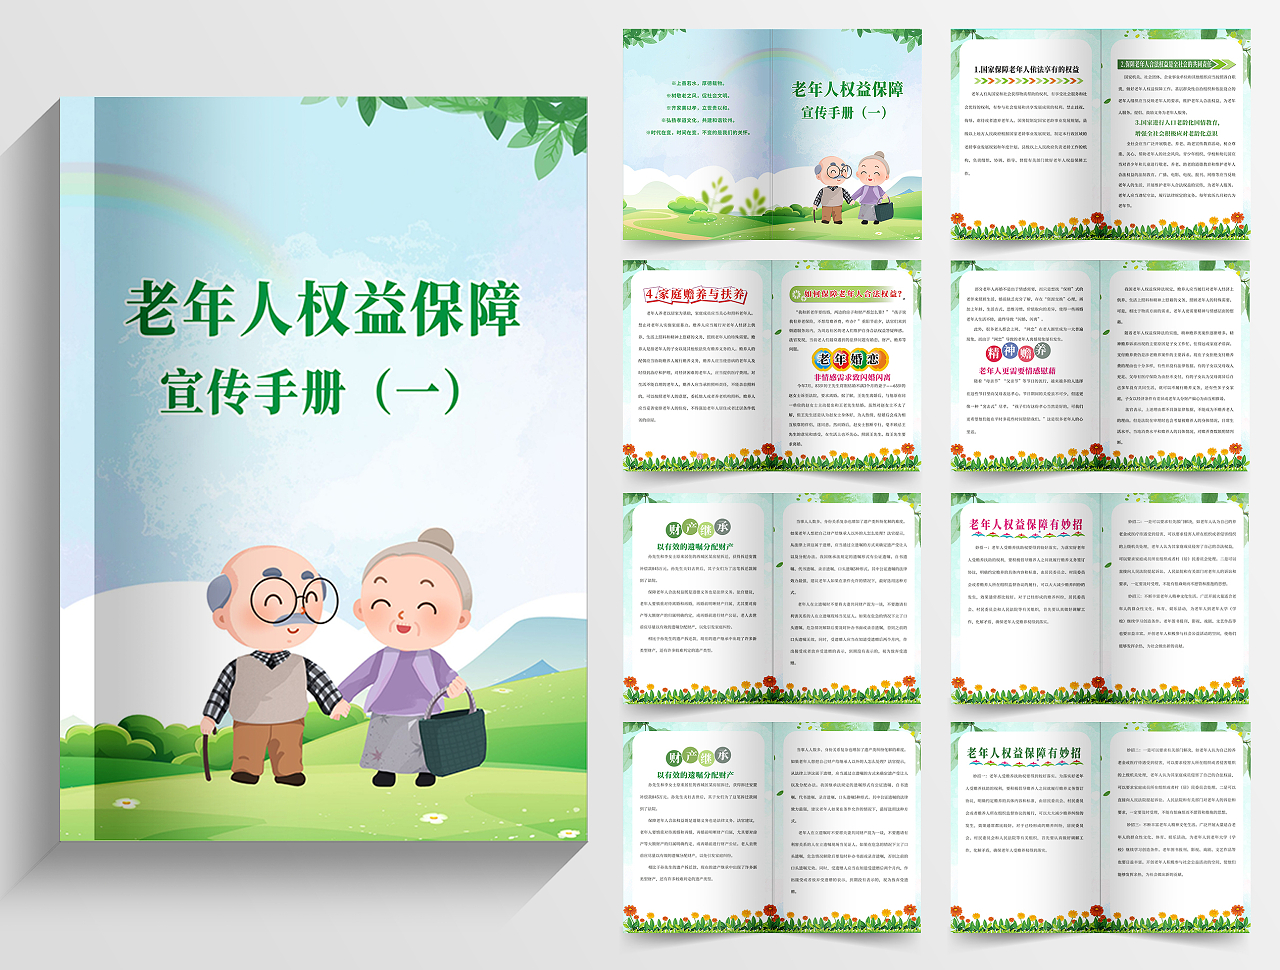 绿色 清新简约法律画册老年人权益保护宣传册